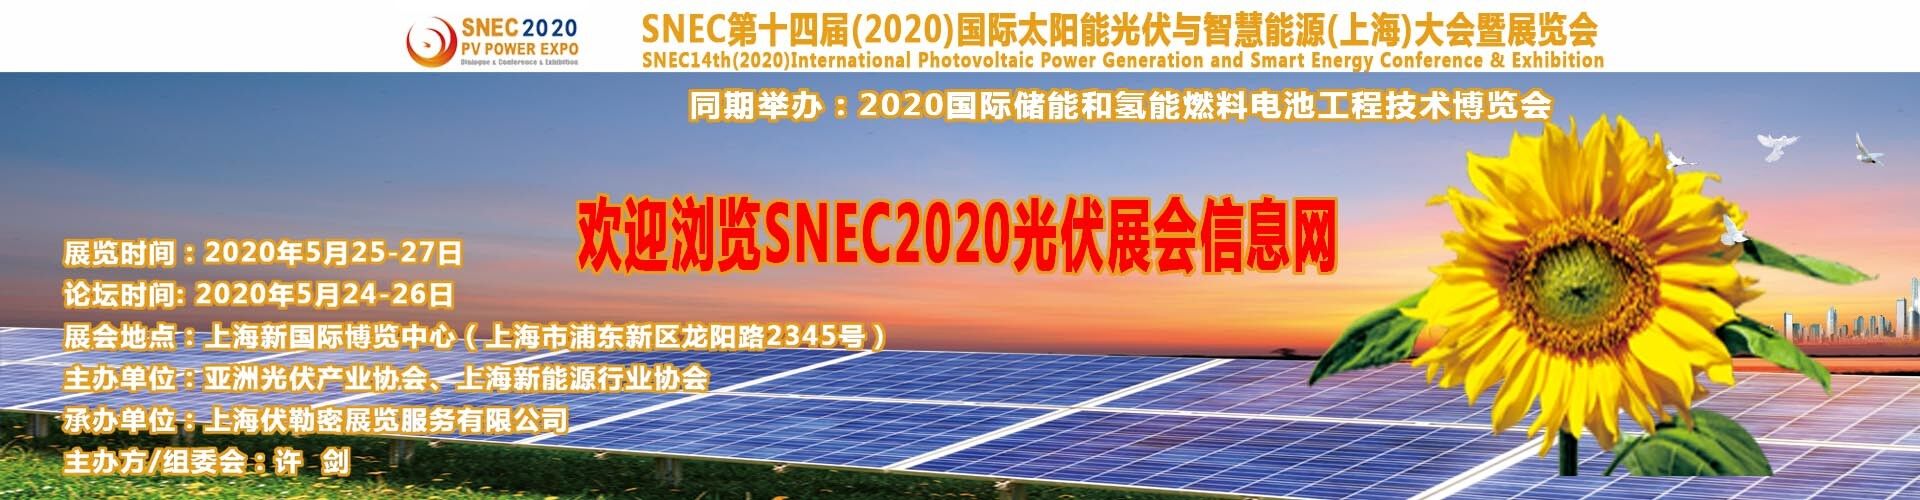 2018印度太陽能光伏企業組團參加SNEC2018